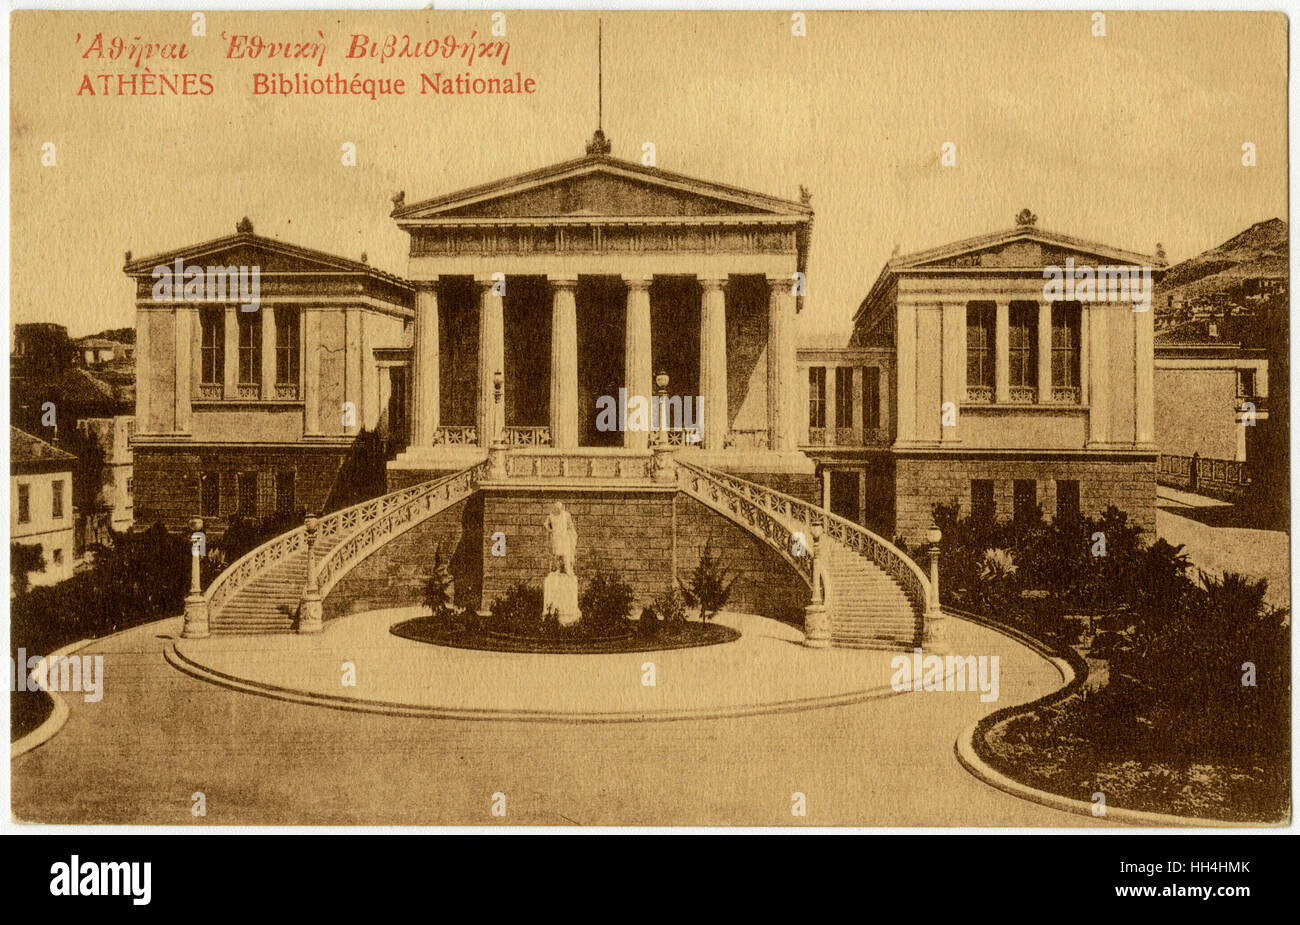 La Bibliothèque nationale, Athènes, Grèce Banque D'Images